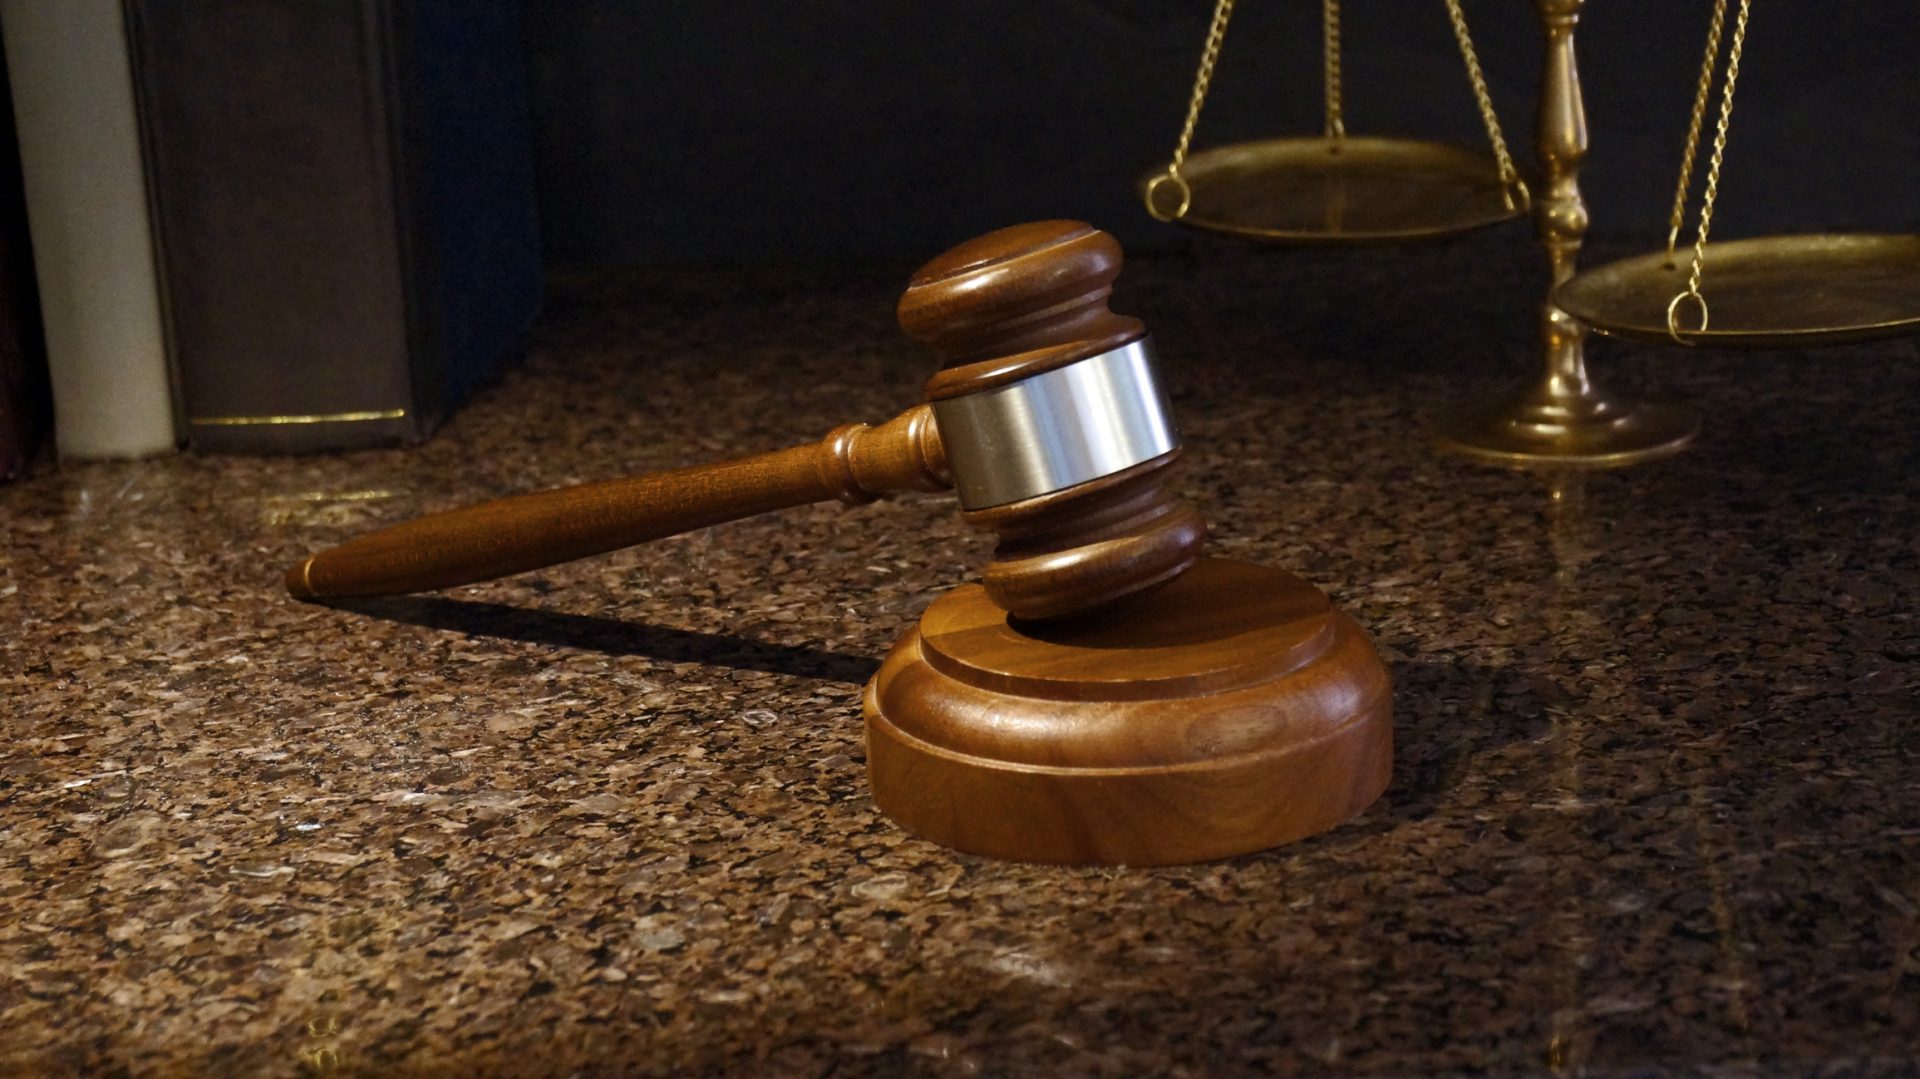 Agente da PSP condenado a cinco meses de prisão suspensa por importunação sexual